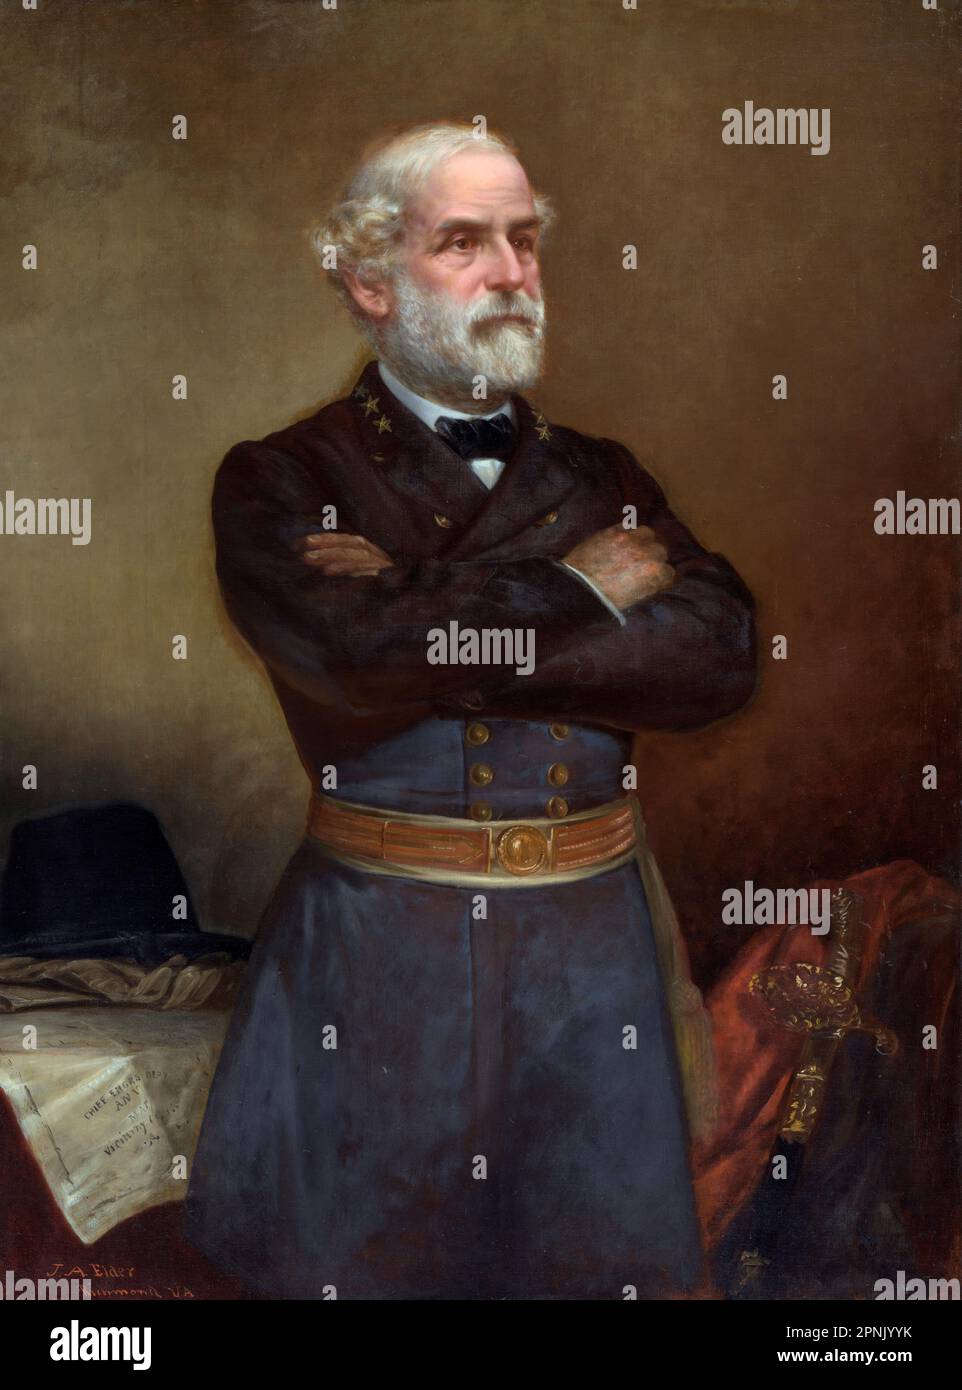 Robert e Lee (1807-1870), ritratto del generale confederato, Robert Edward Lee di John Adams anziano, olio su tela, 1876 Foto Stock